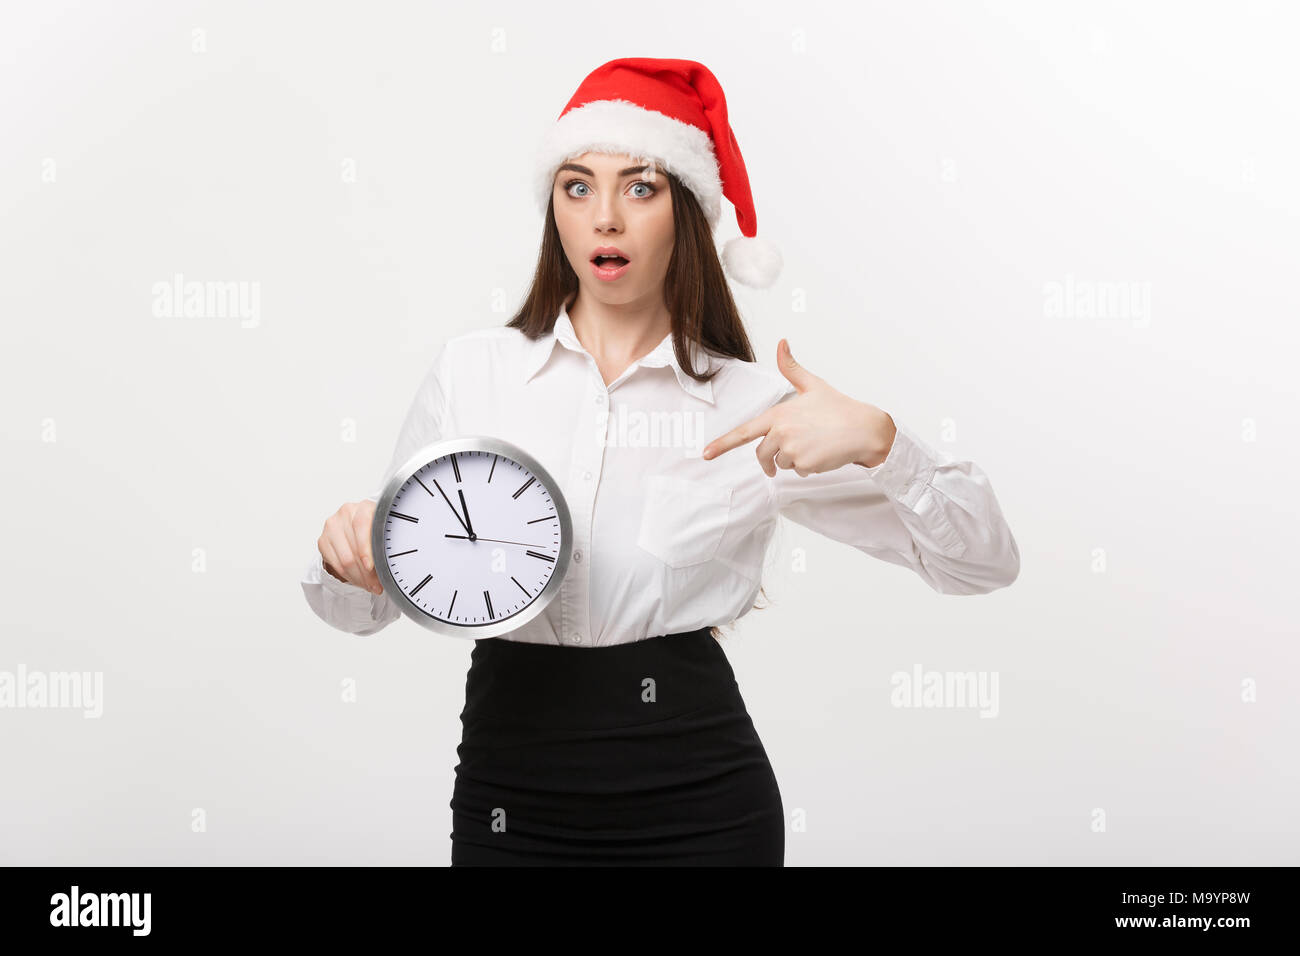 Concept de gestion du temps - Young business woman with santa hat holding et de pointage d'une horloge isolated over white background. Banque D'Images